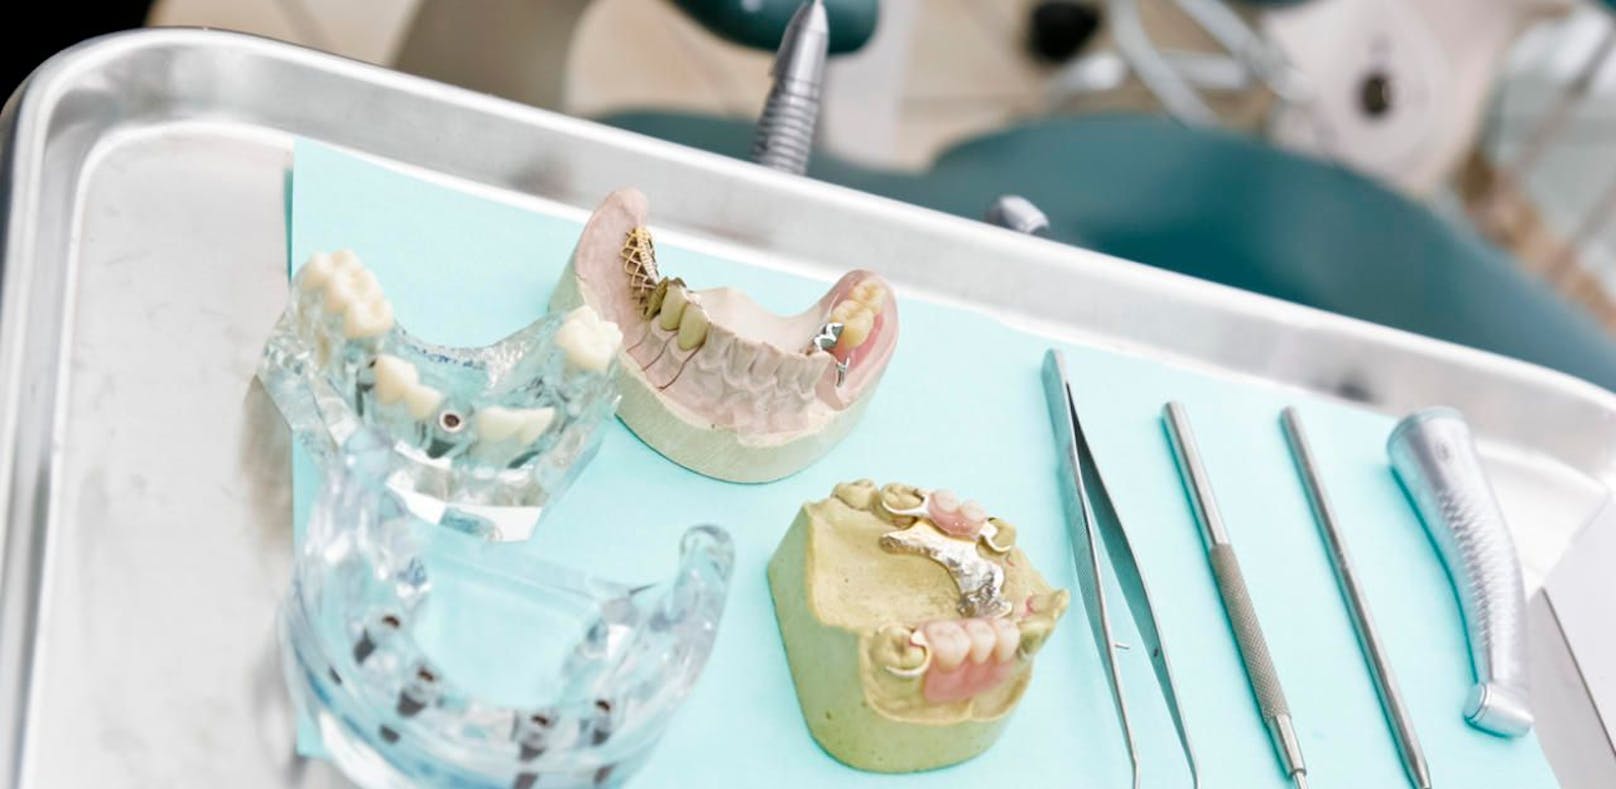 Frau war zum Schnuppern in der Zahnarztpraxis, dann folgte die böse Überraschung. 